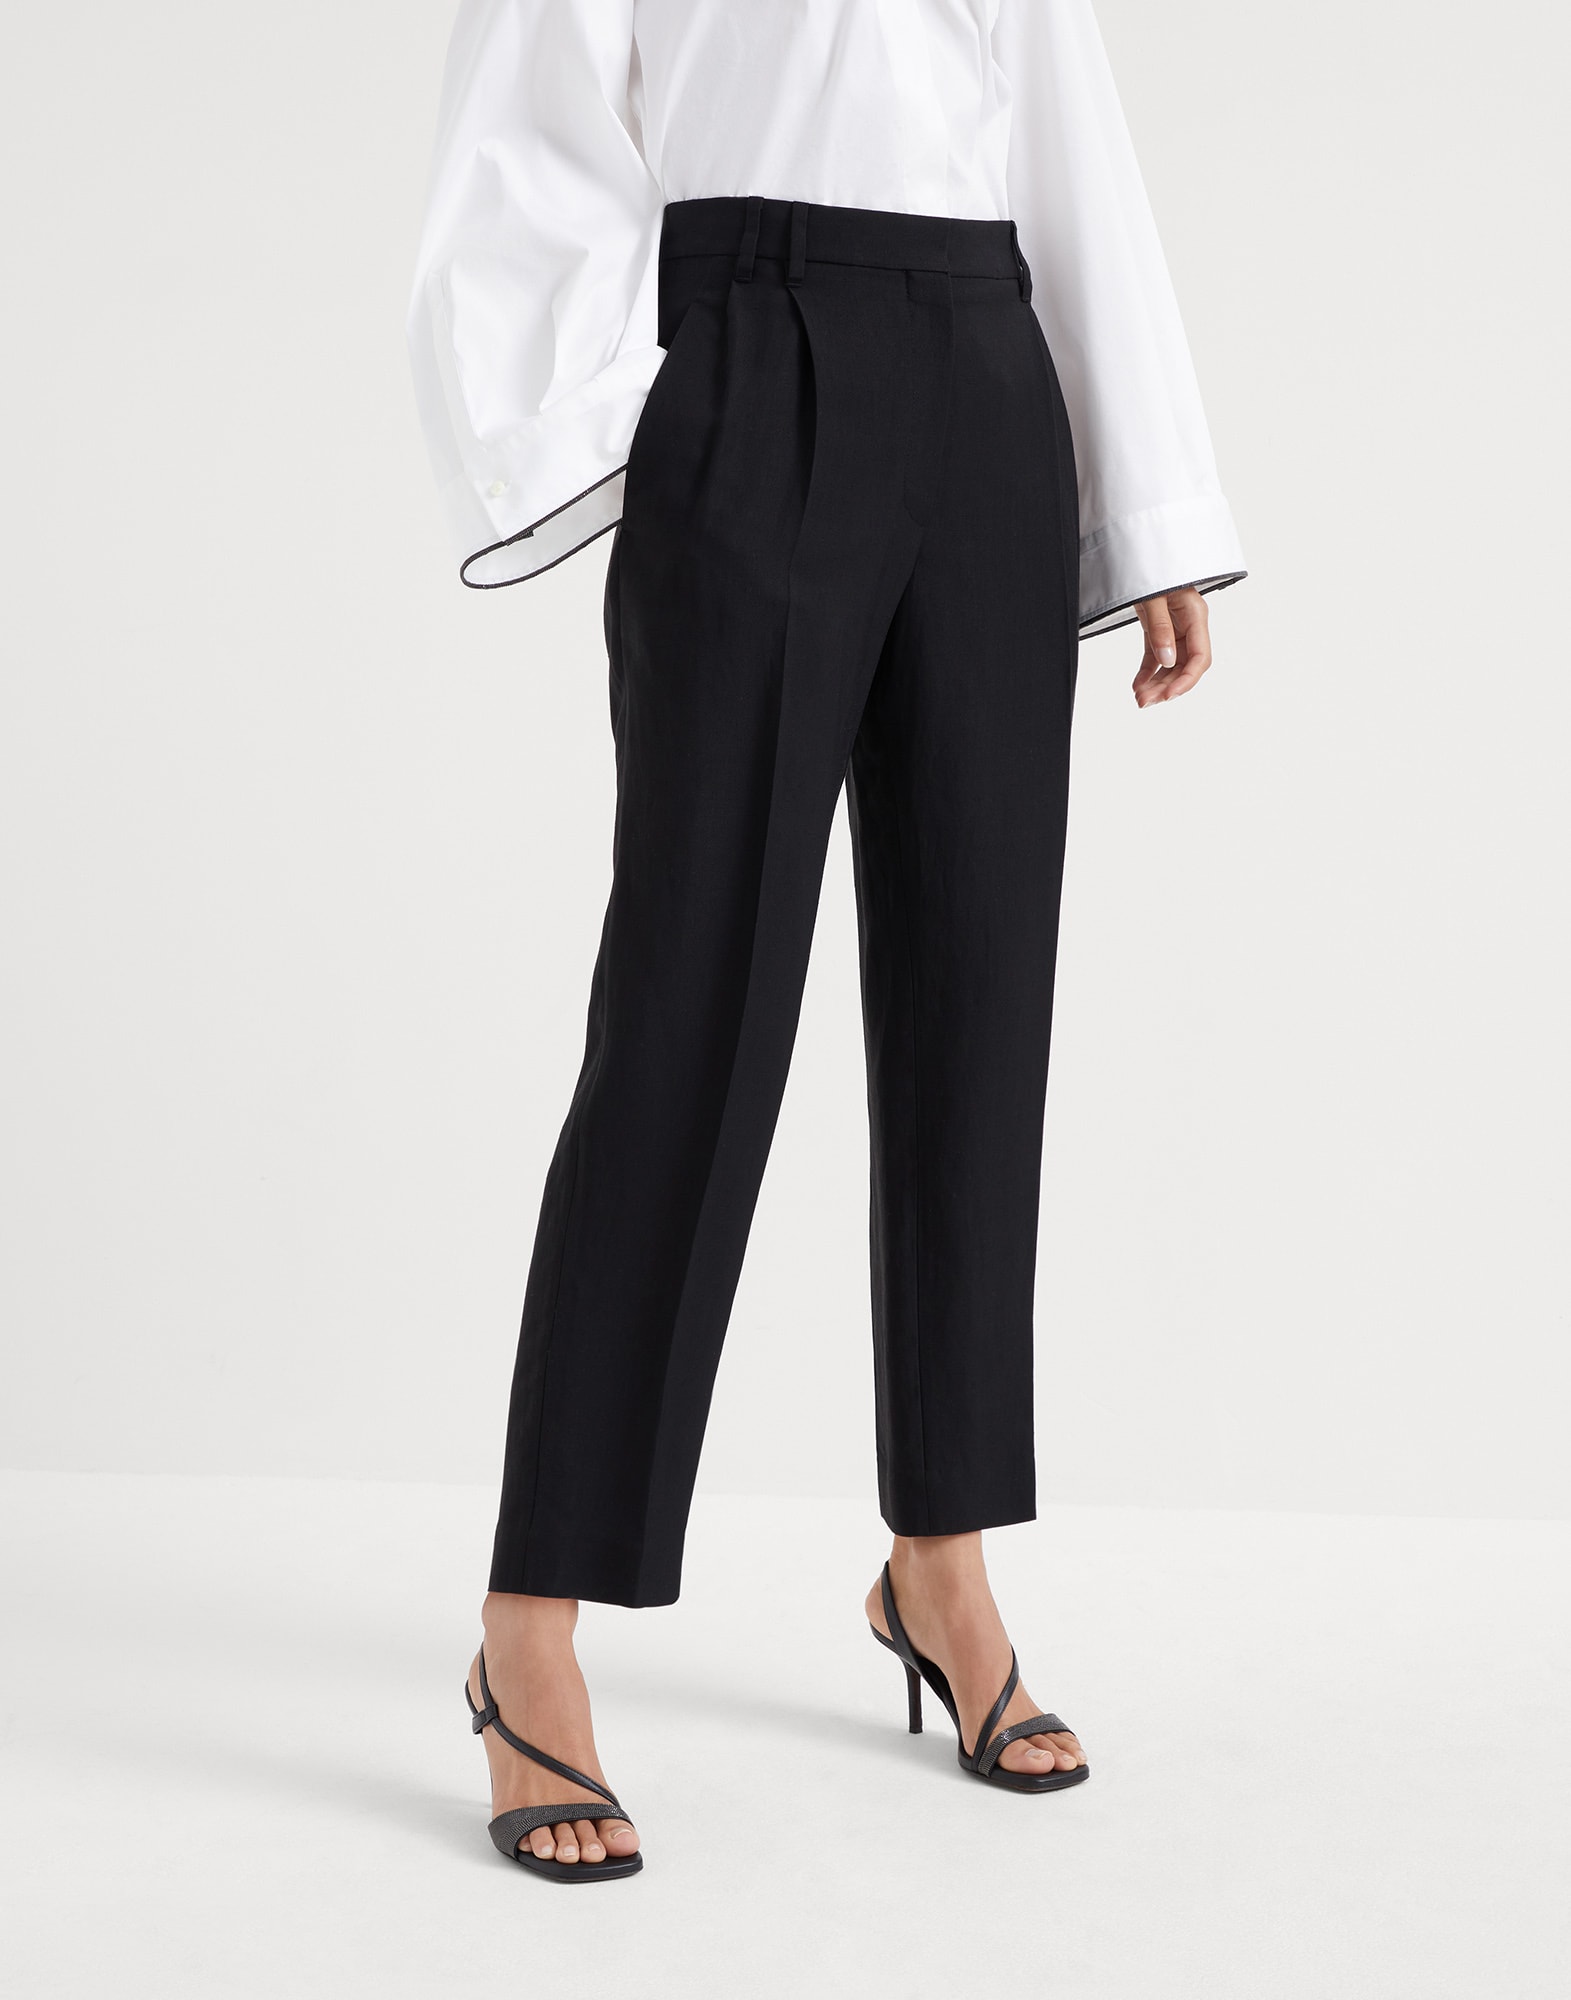 Buy Diaz Women's Regular Fit Printed 3/4th Capri Pants  (Black,Grey,Marroon,Royal Blue,34) at